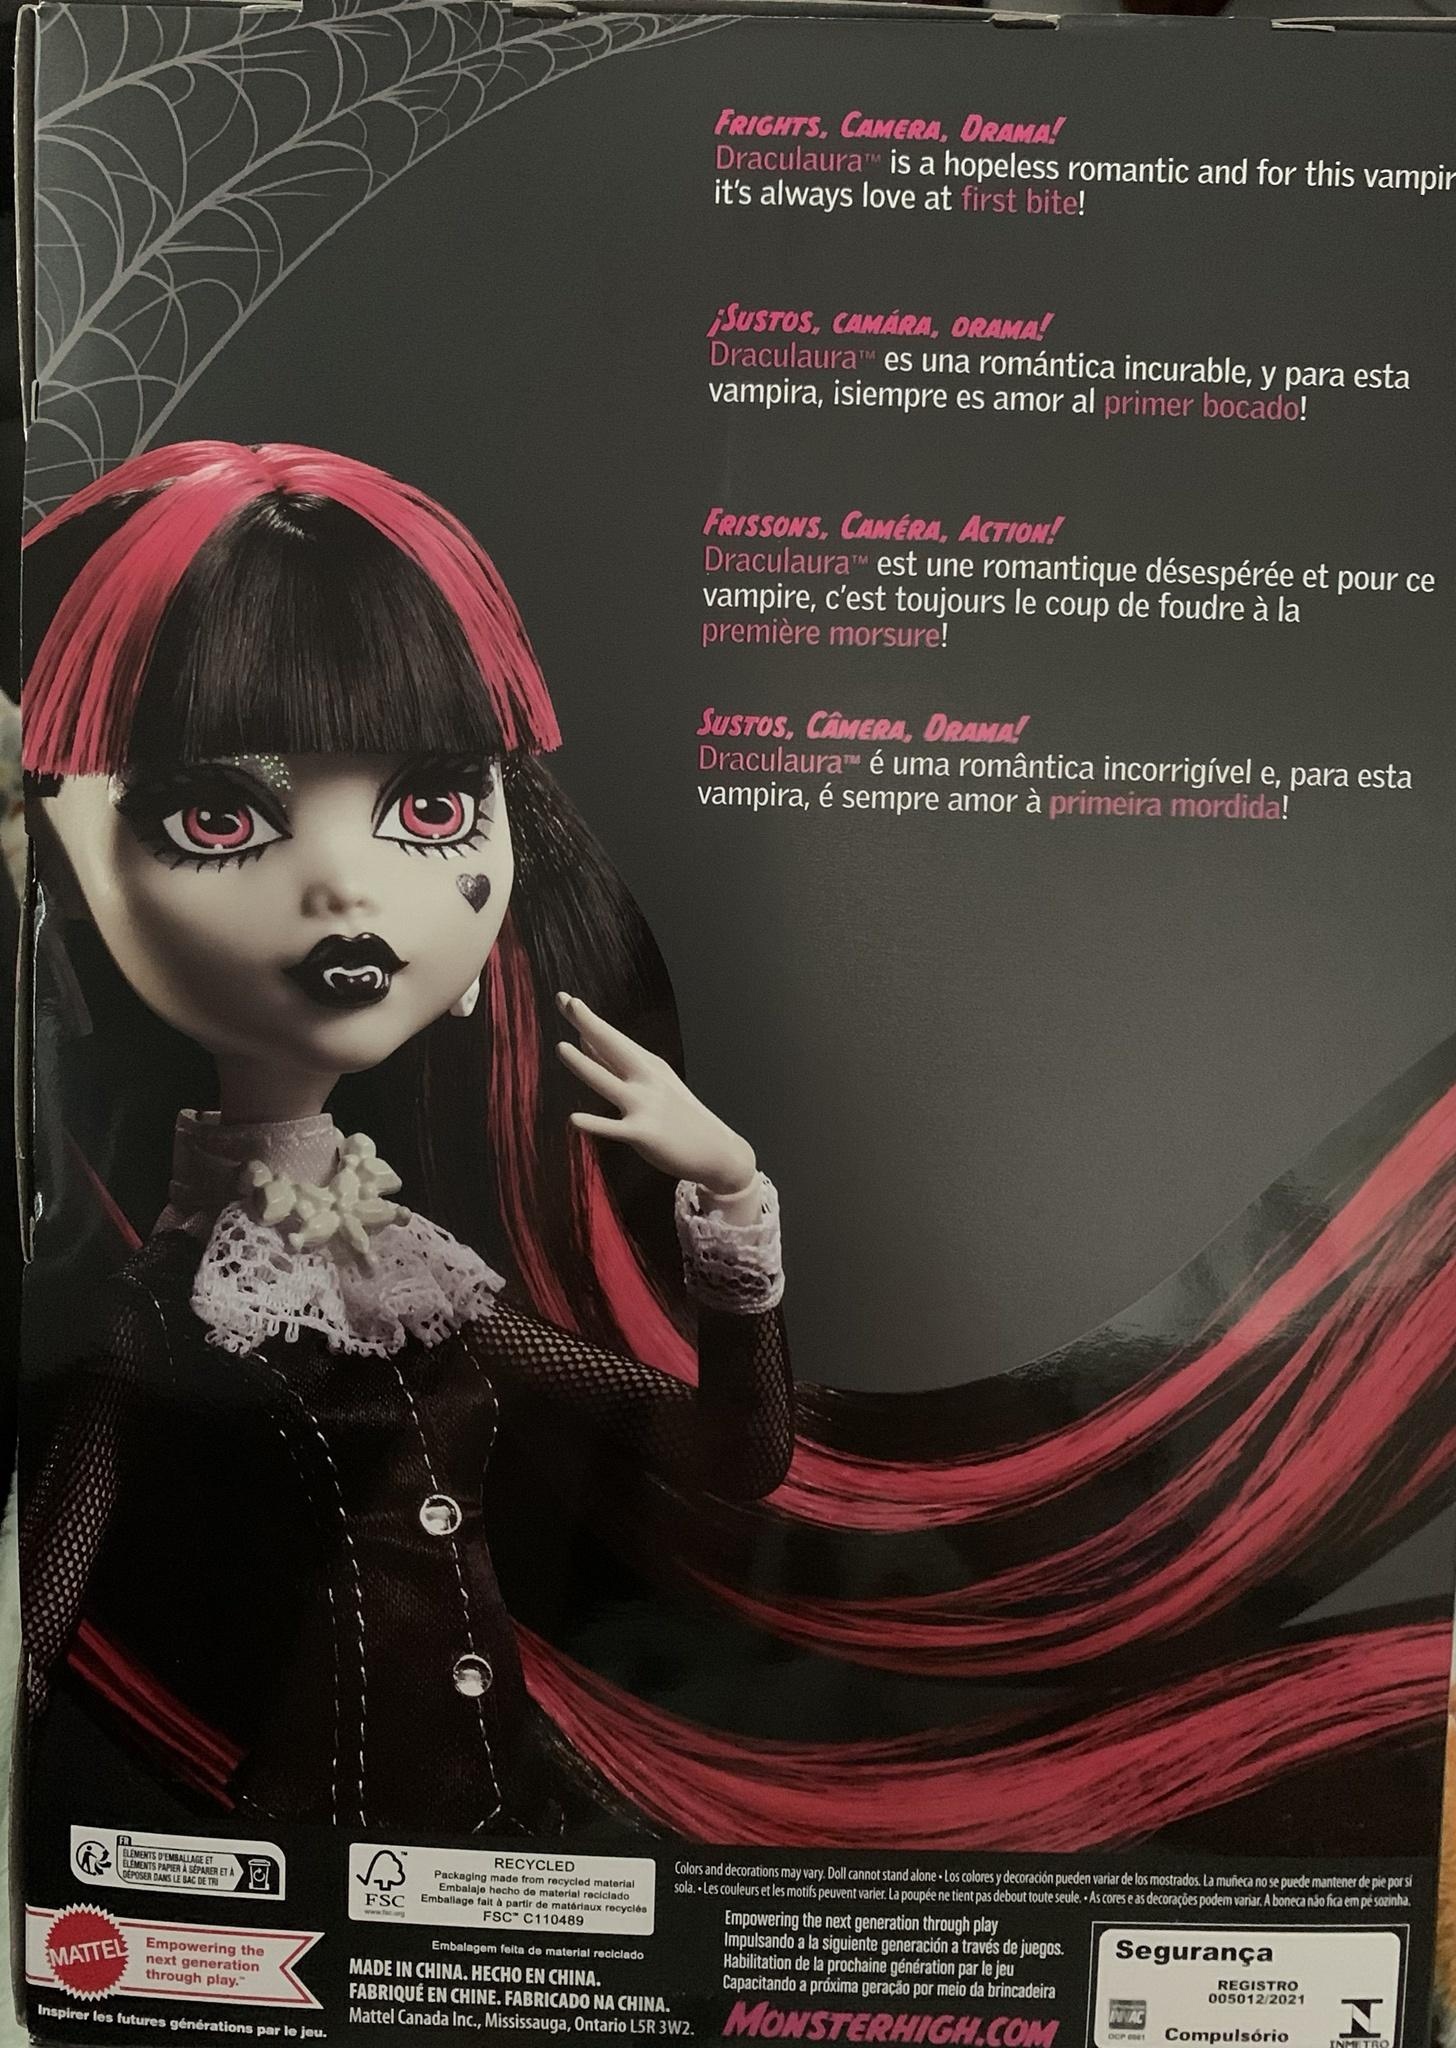 Monster High Reel Drama Black and White dolls 2022 